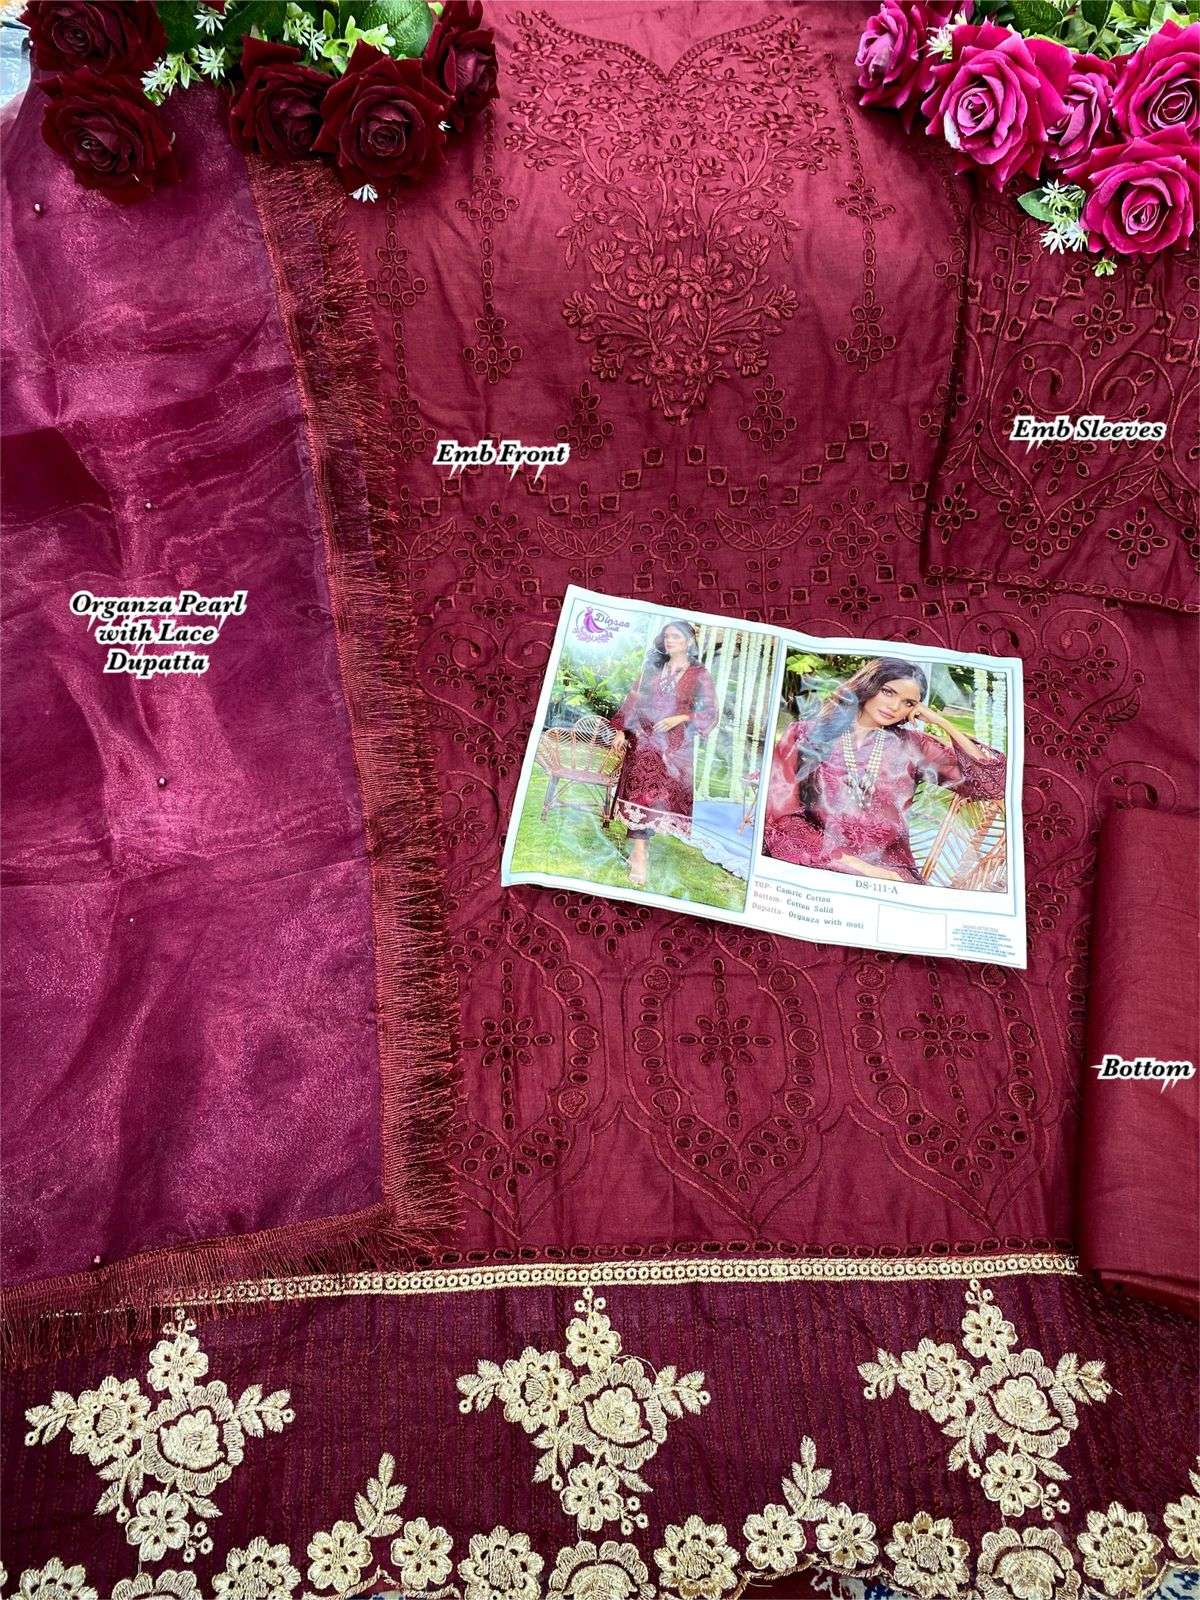 dinsaa suits 111 colour edition salwar kameez wholesale price surat